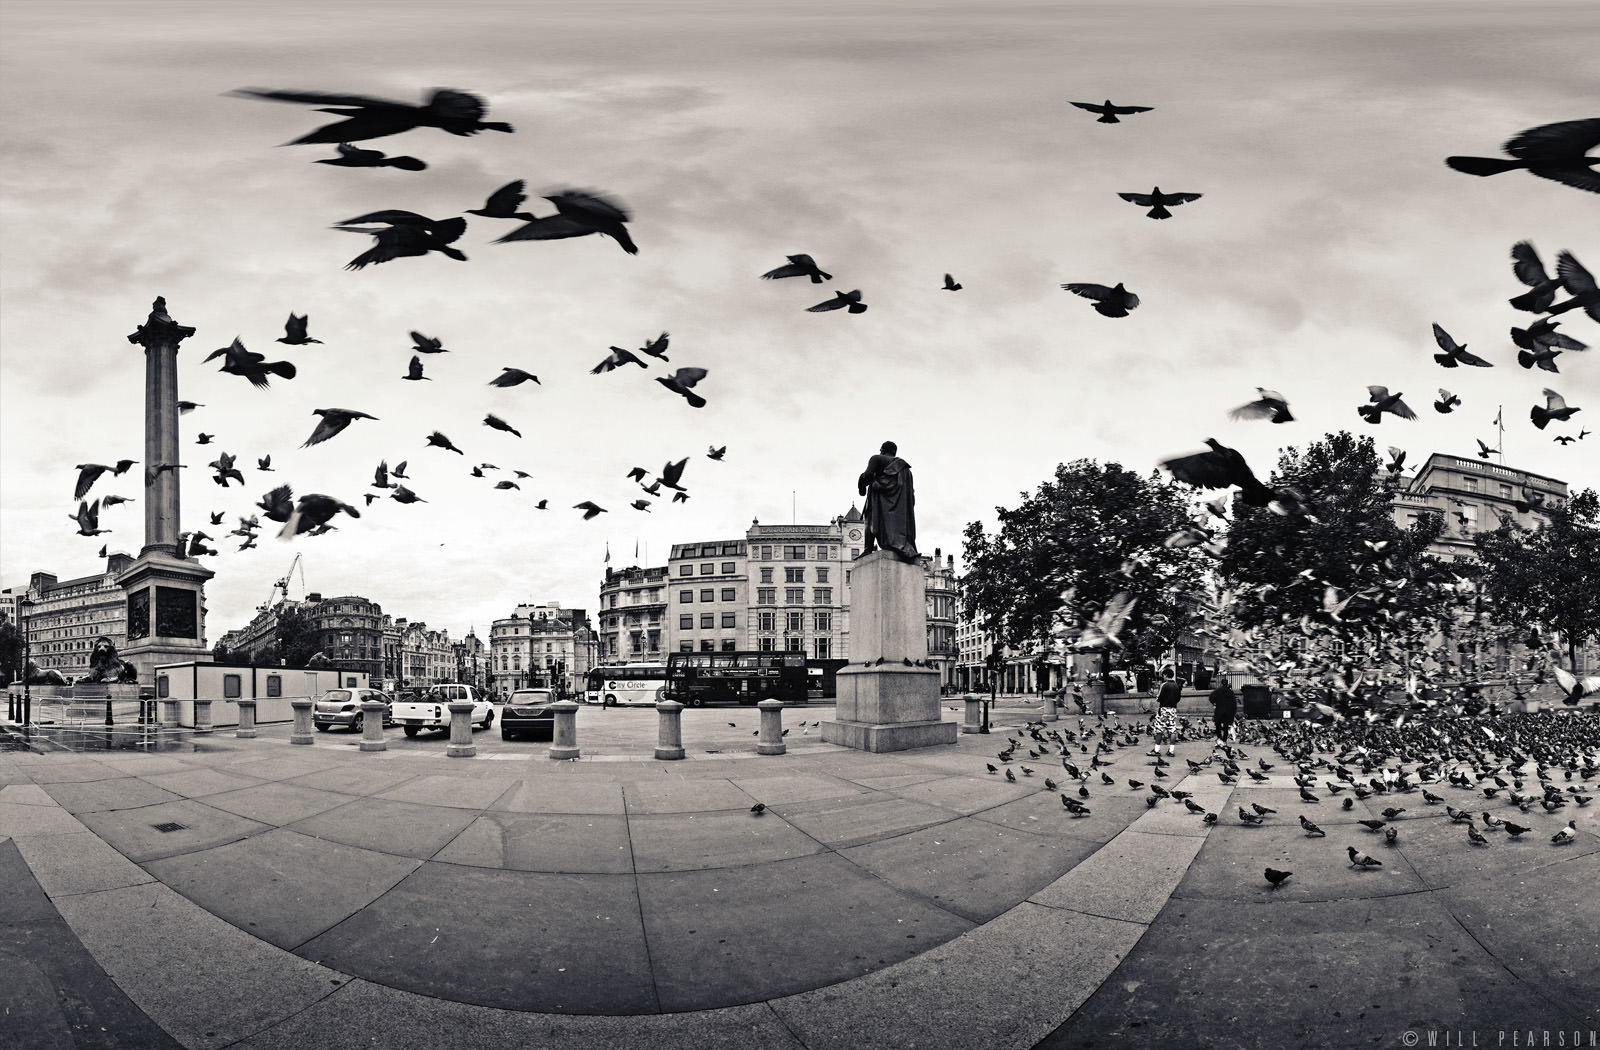 The Birds, Trafalgar Square